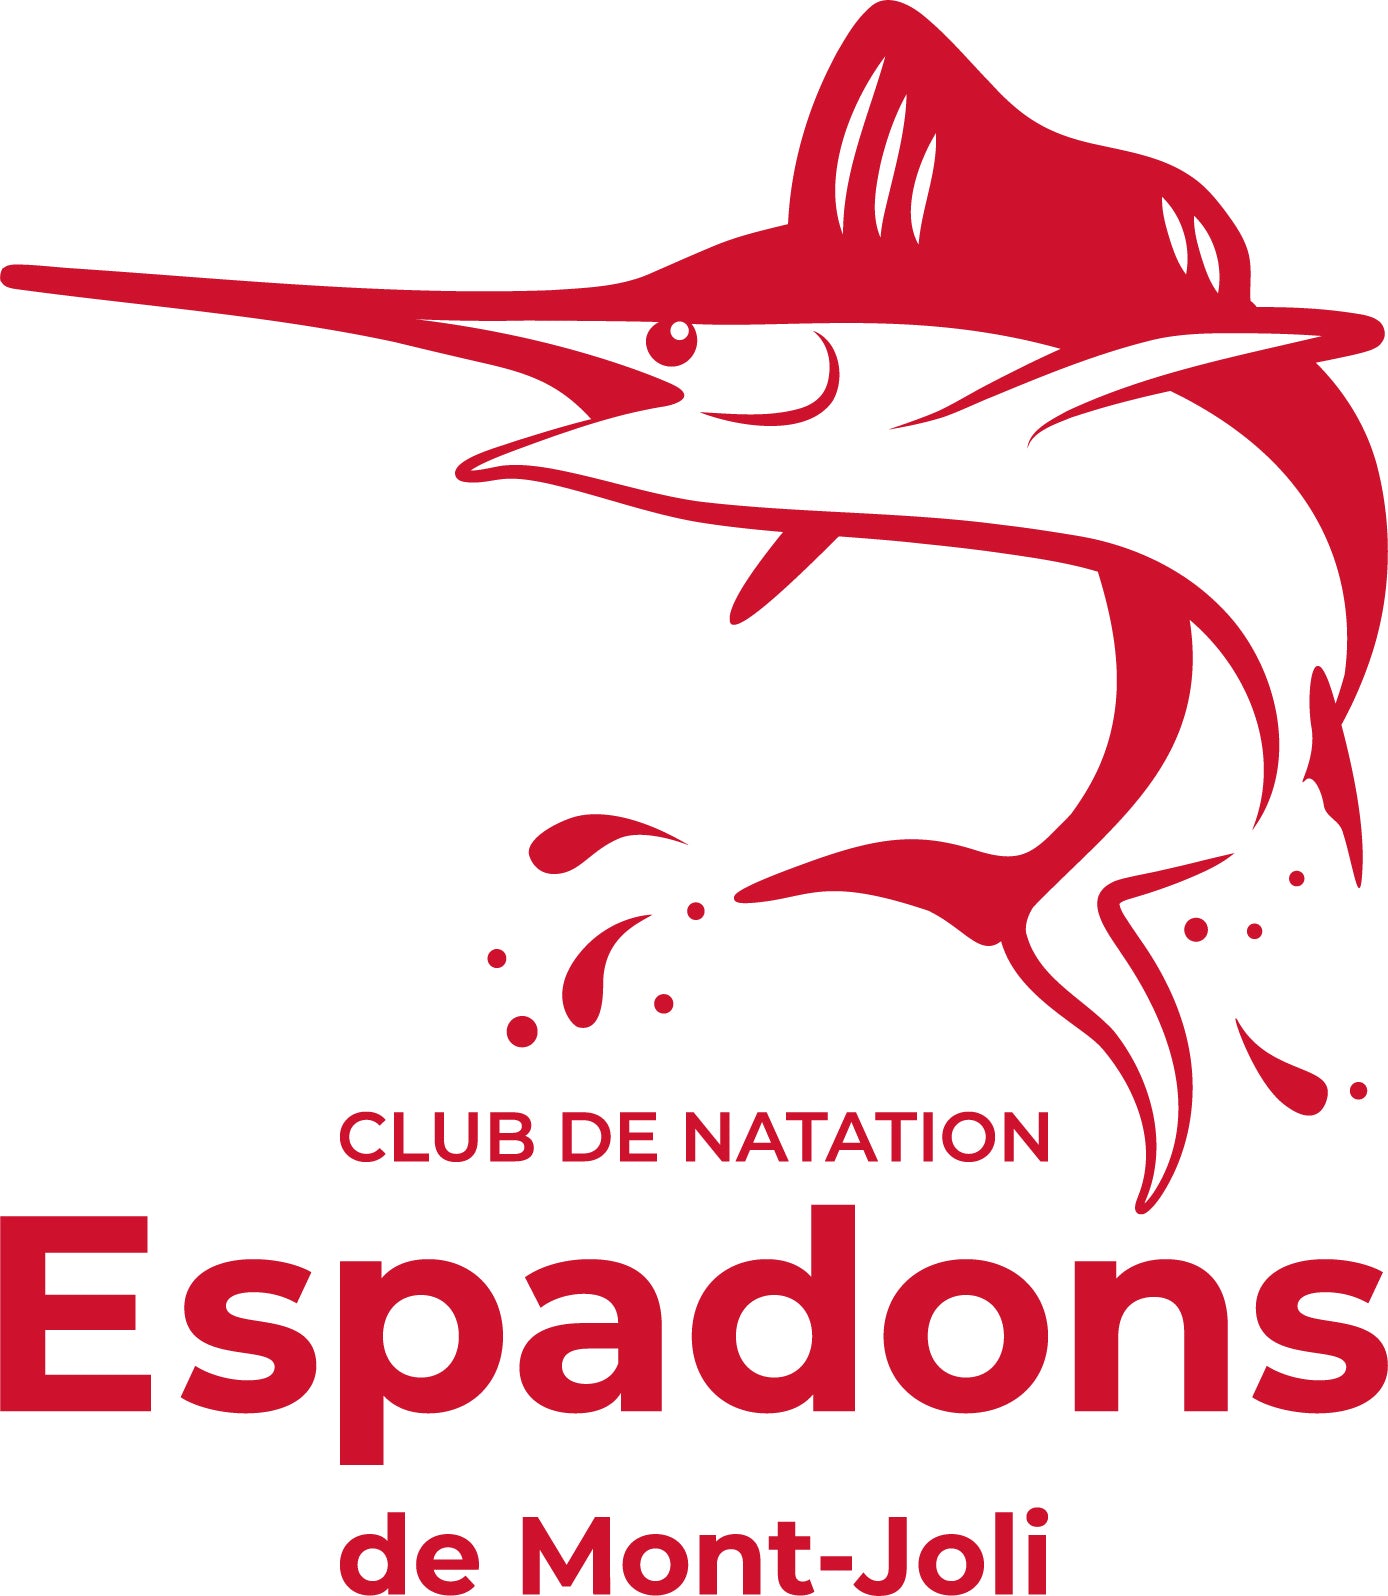 Club de natation Les Espadons